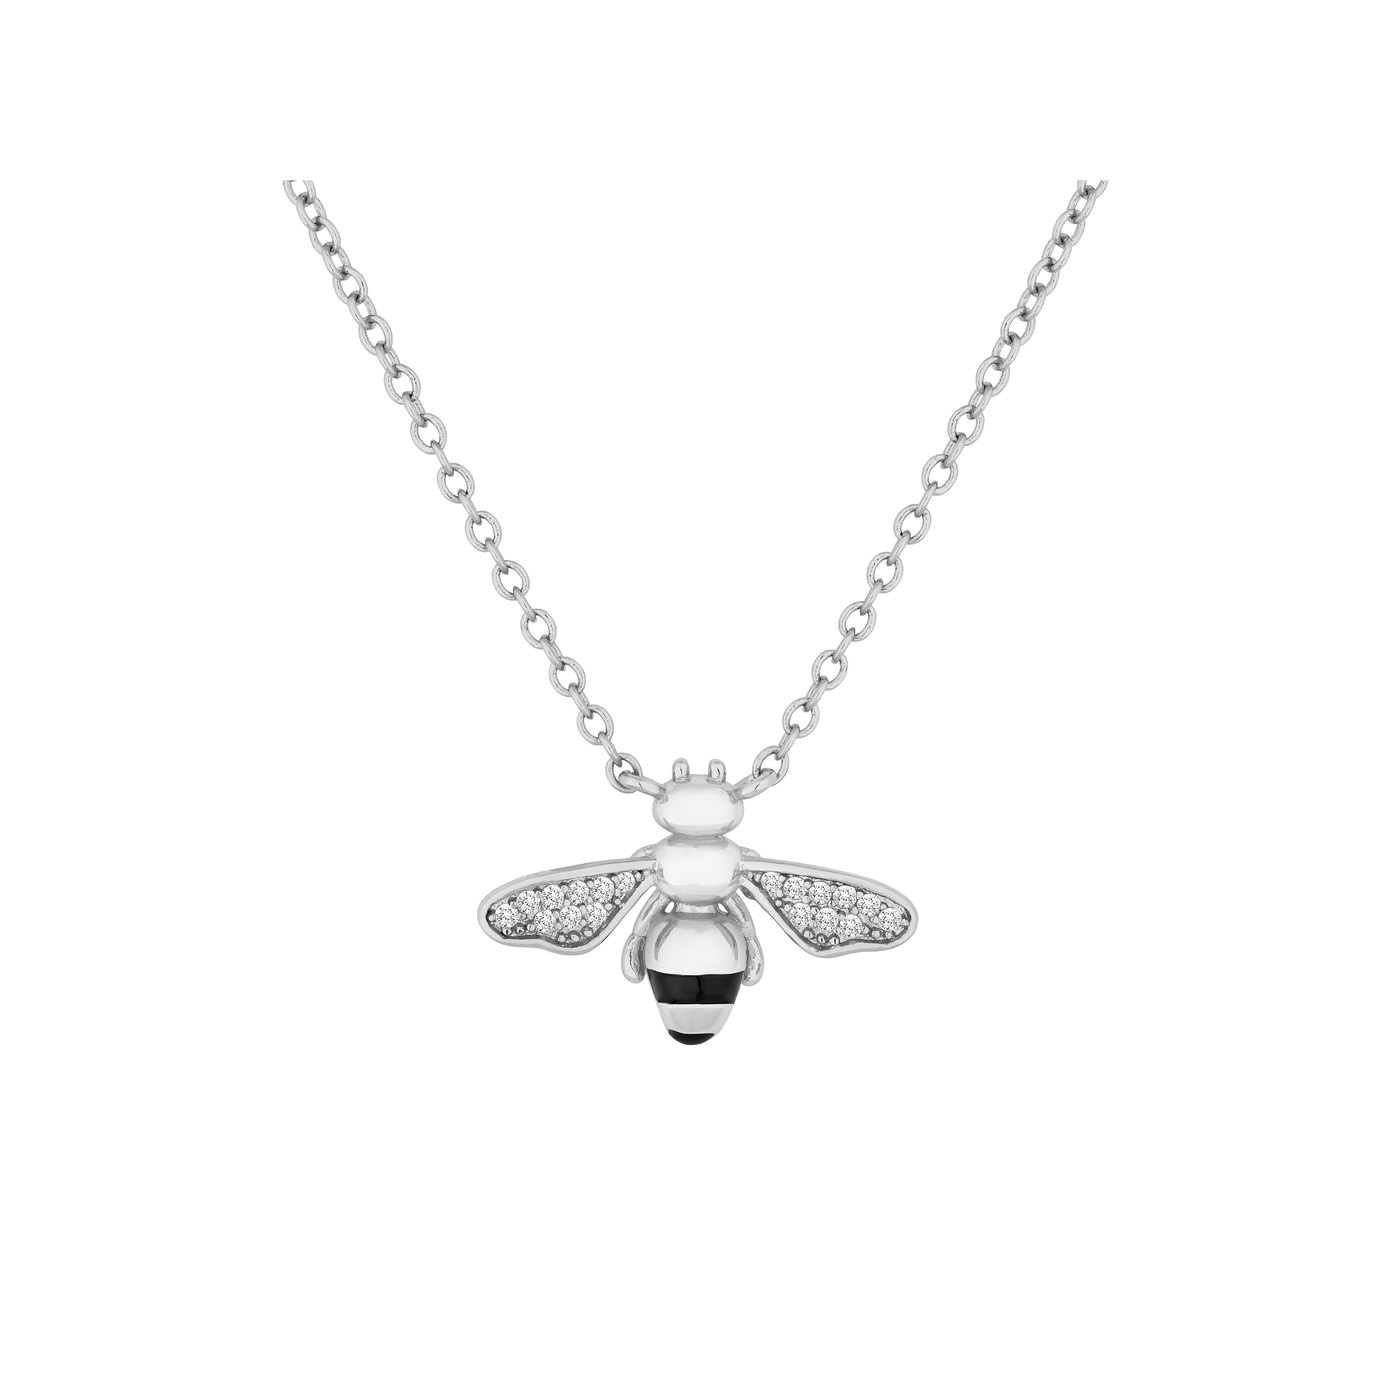 Vlastní design OEM/ODM Jewelry Bee Pendant u dodavatelů šperků s rhodiováním